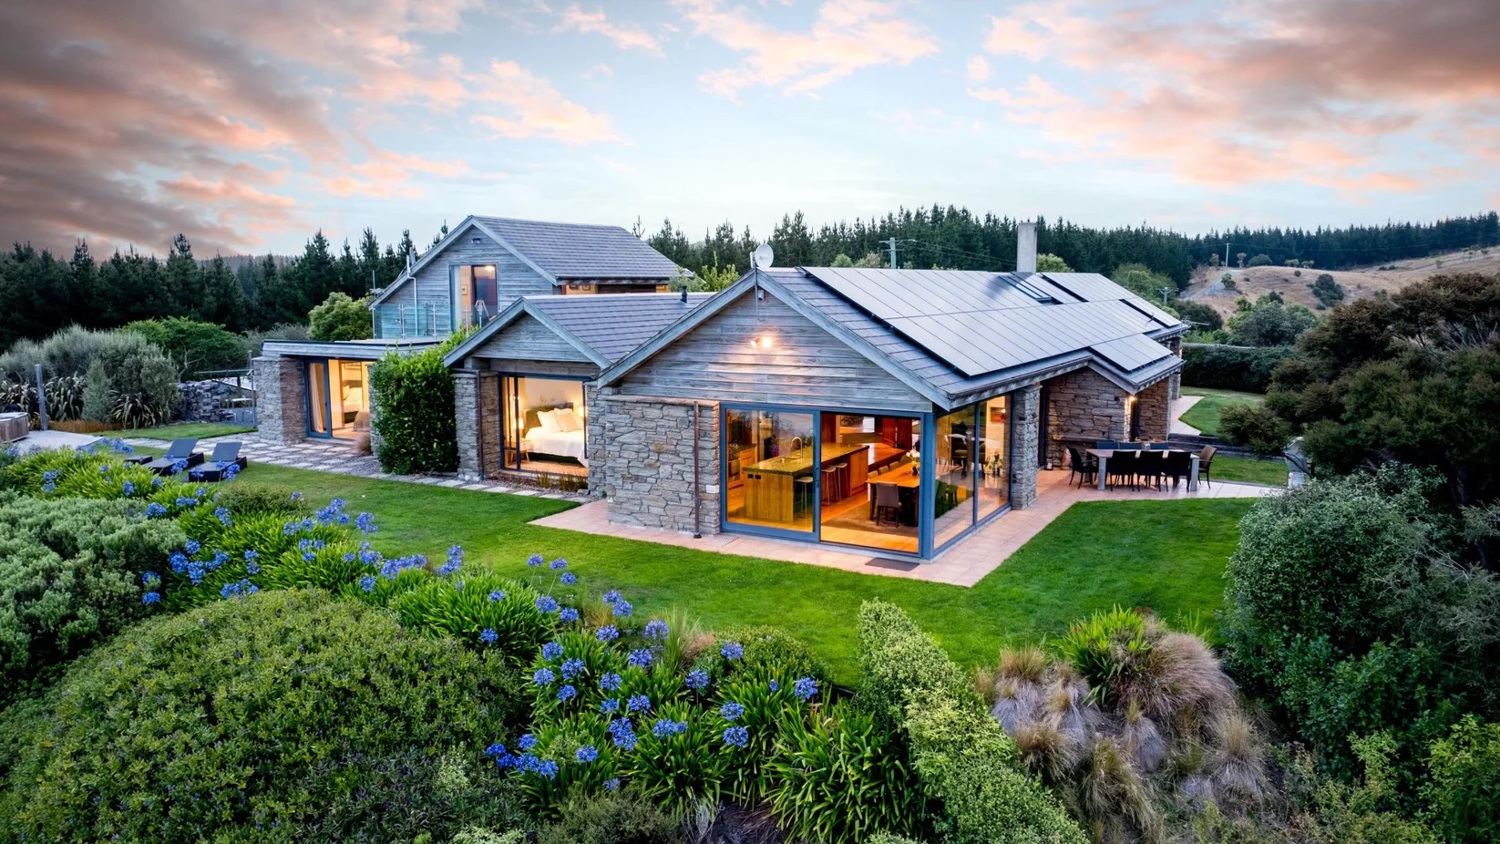 Rural home in Dunedin, New Zealand